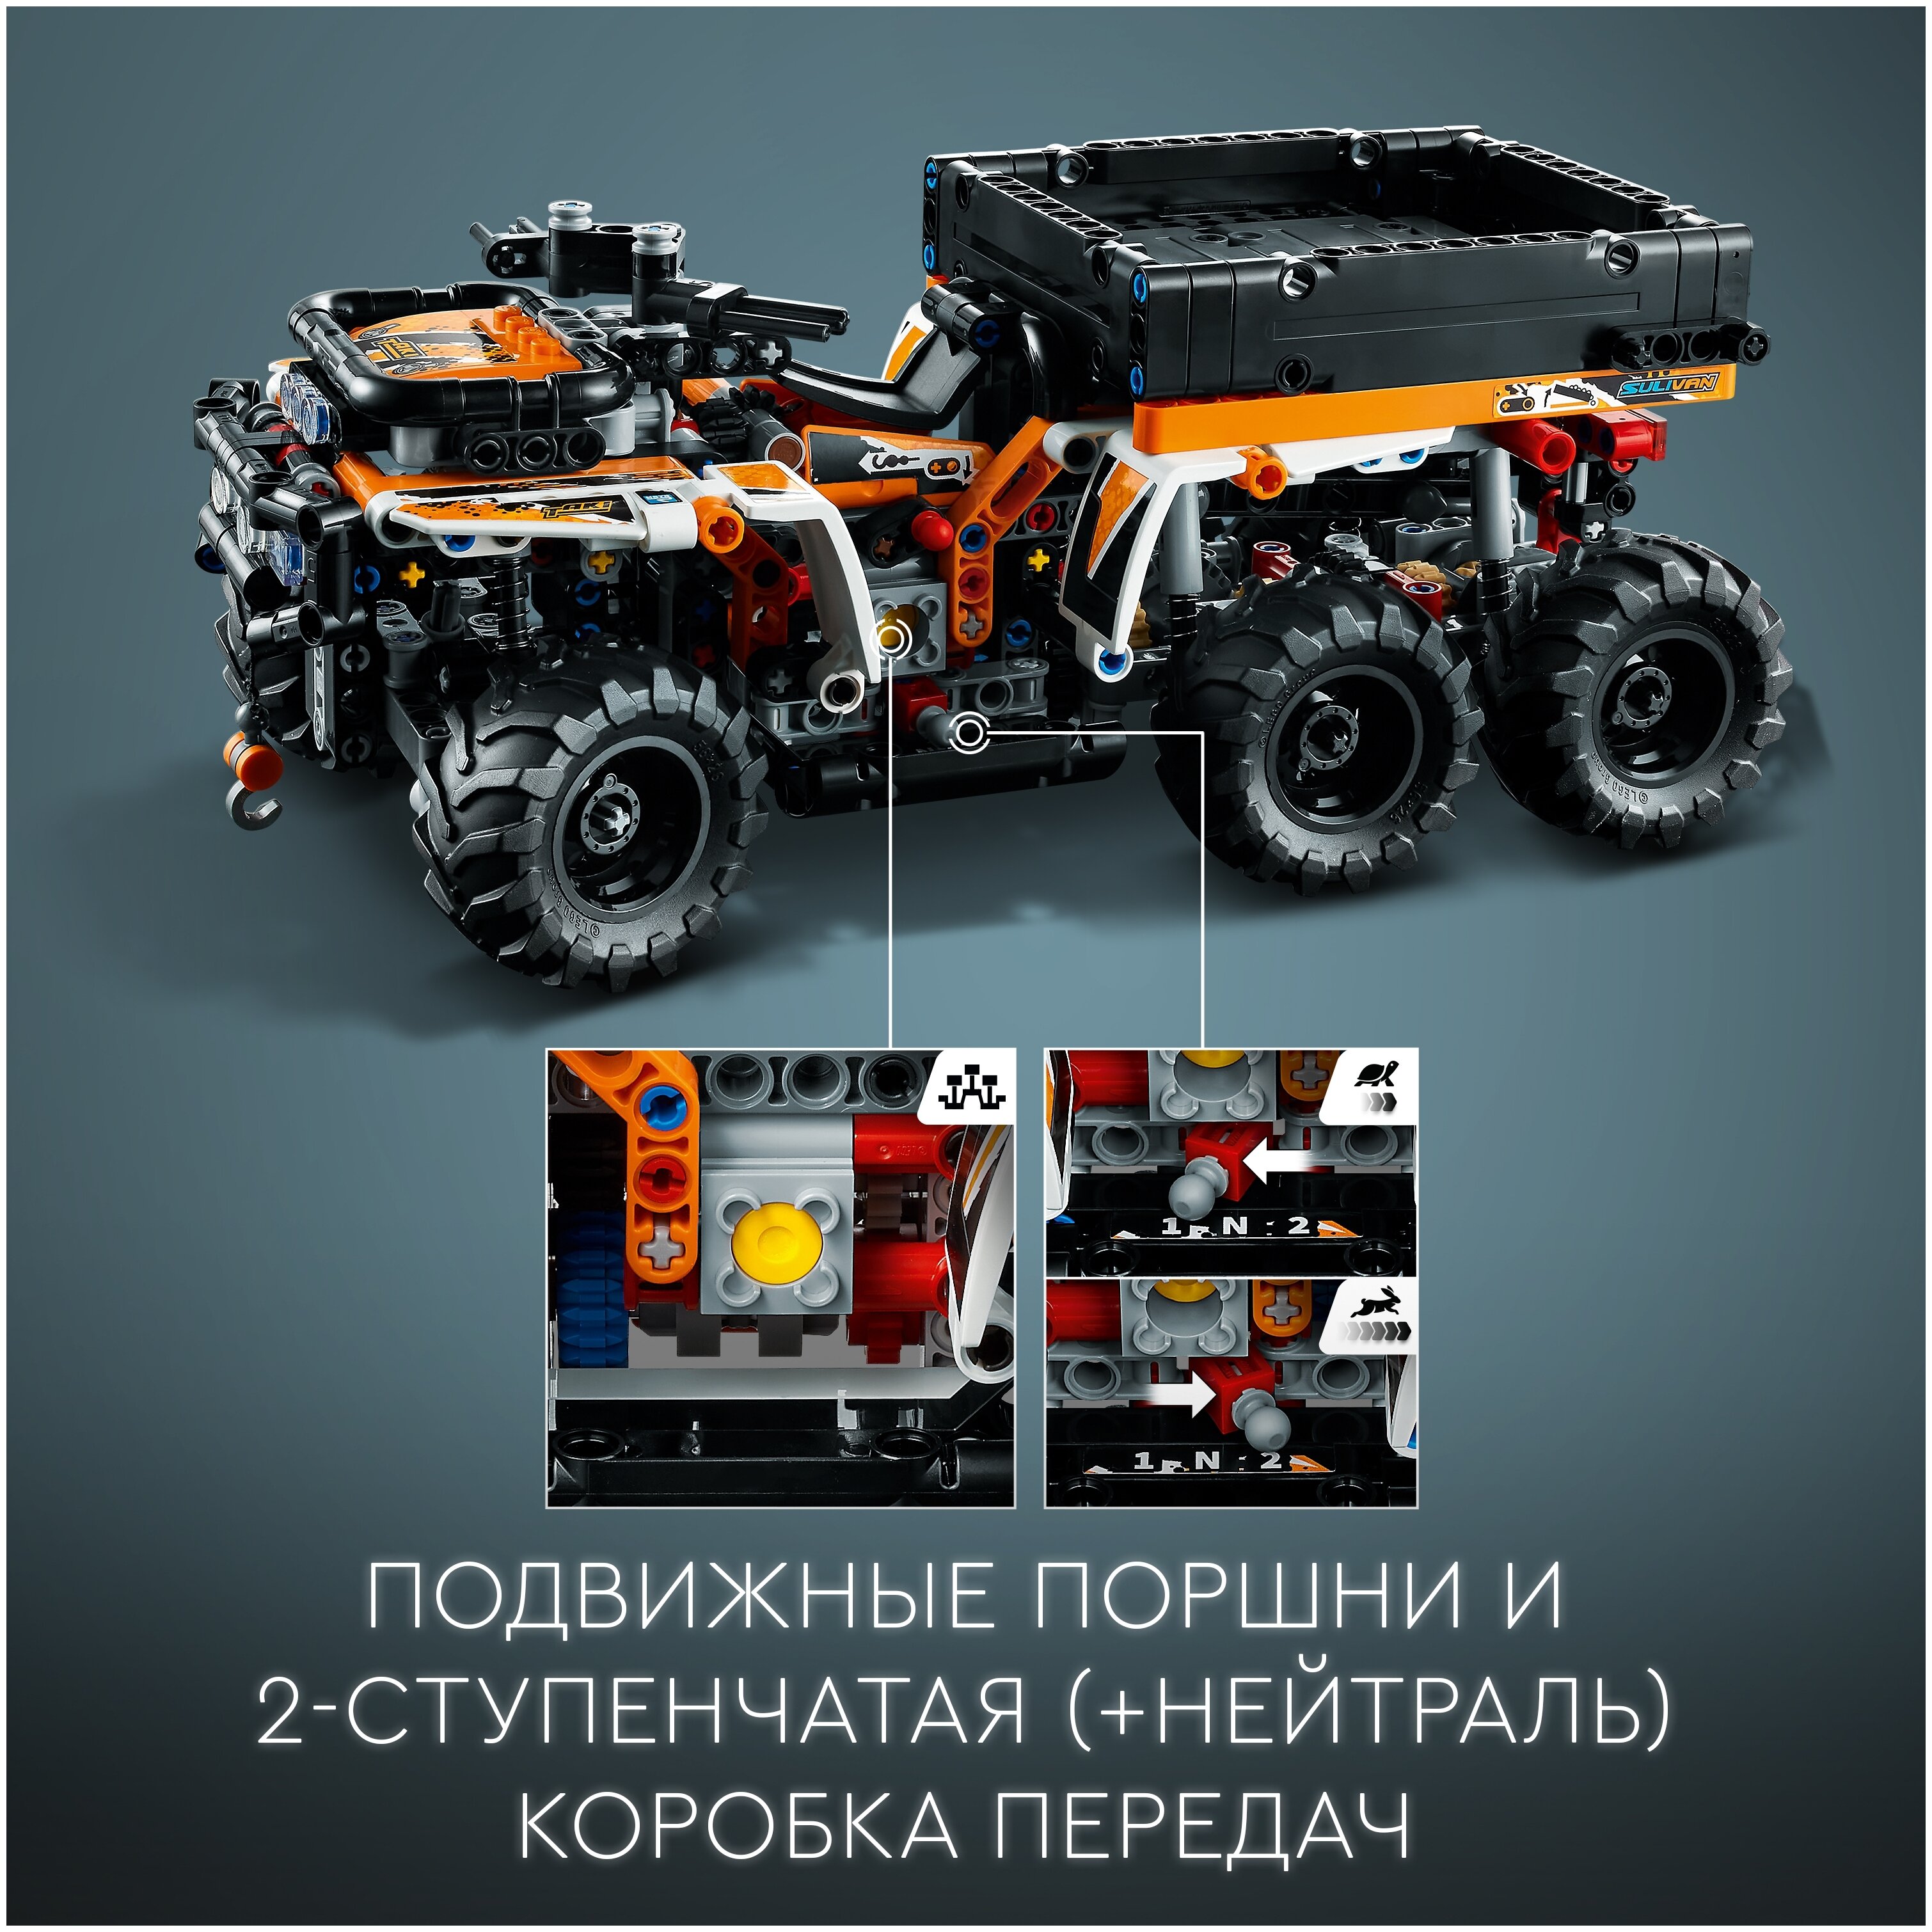 Конструктор LEGO Внедорожный грузовик Technic 42139 Казахстан